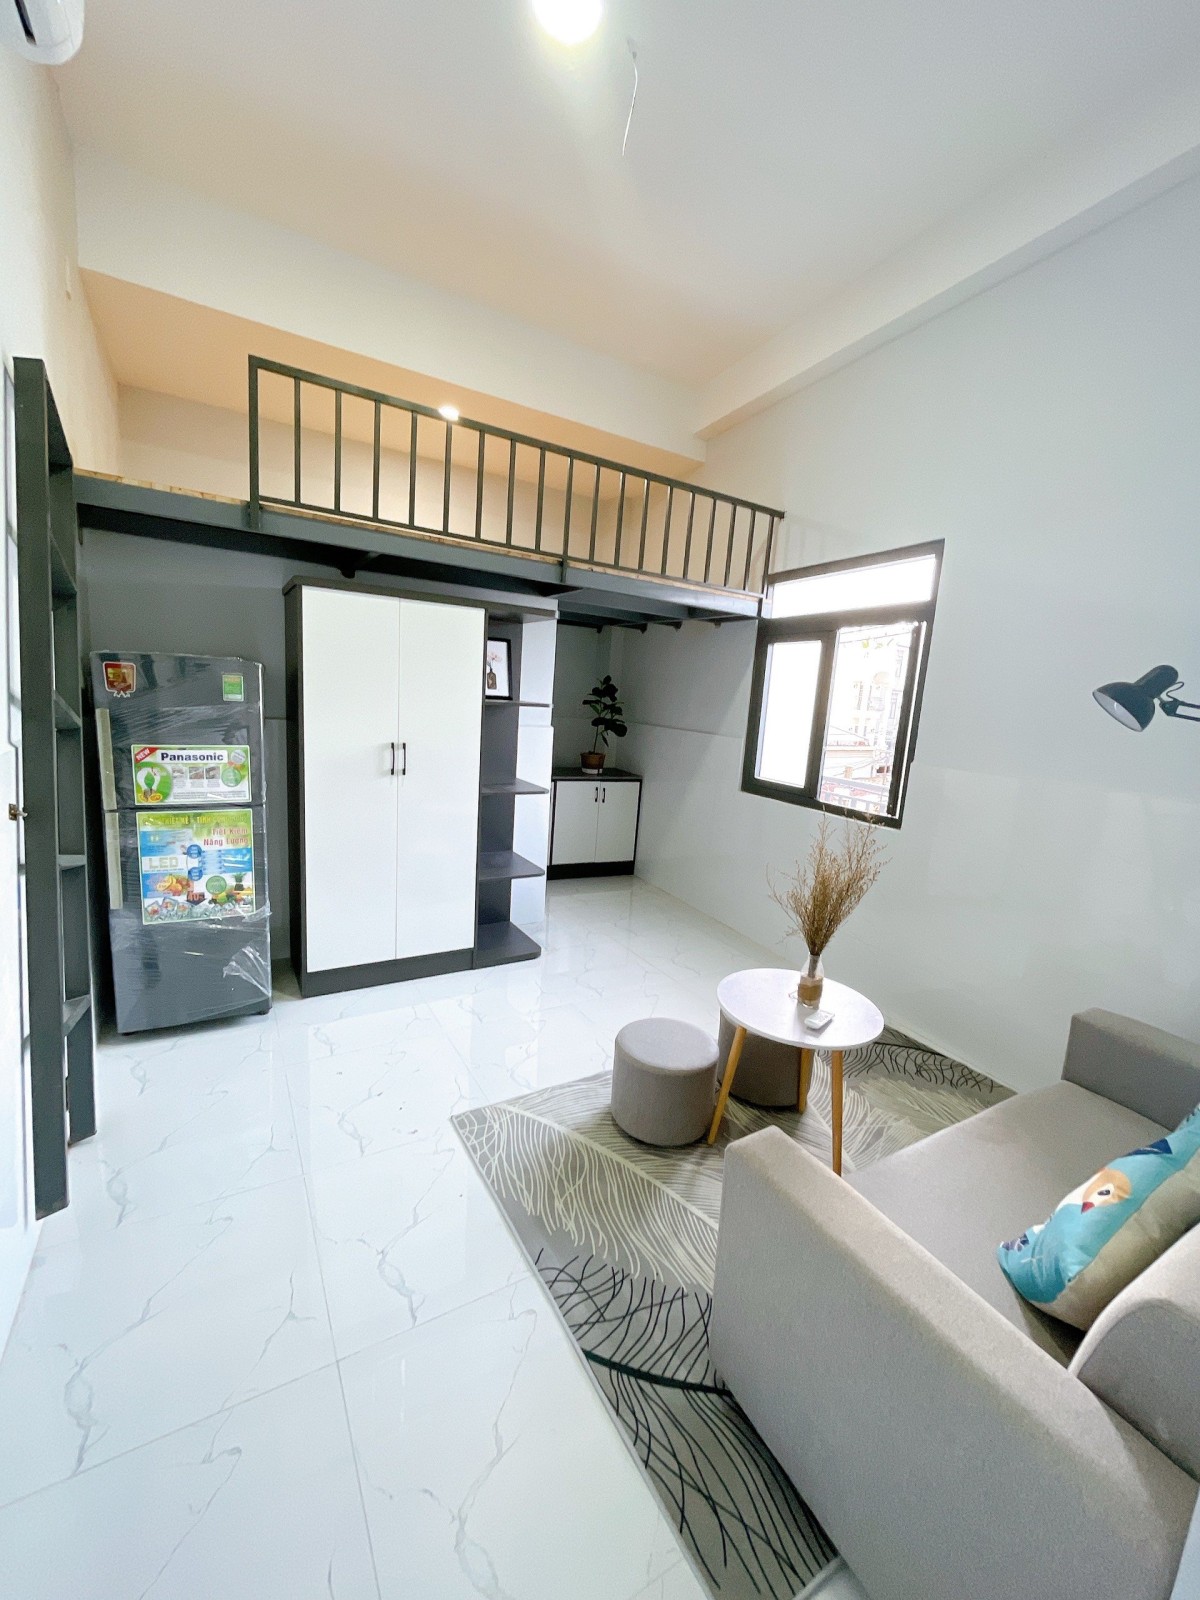 Khai trương căn hộ mới 100% có nội thất chưa bóc tem ở đường Vườn Lài.